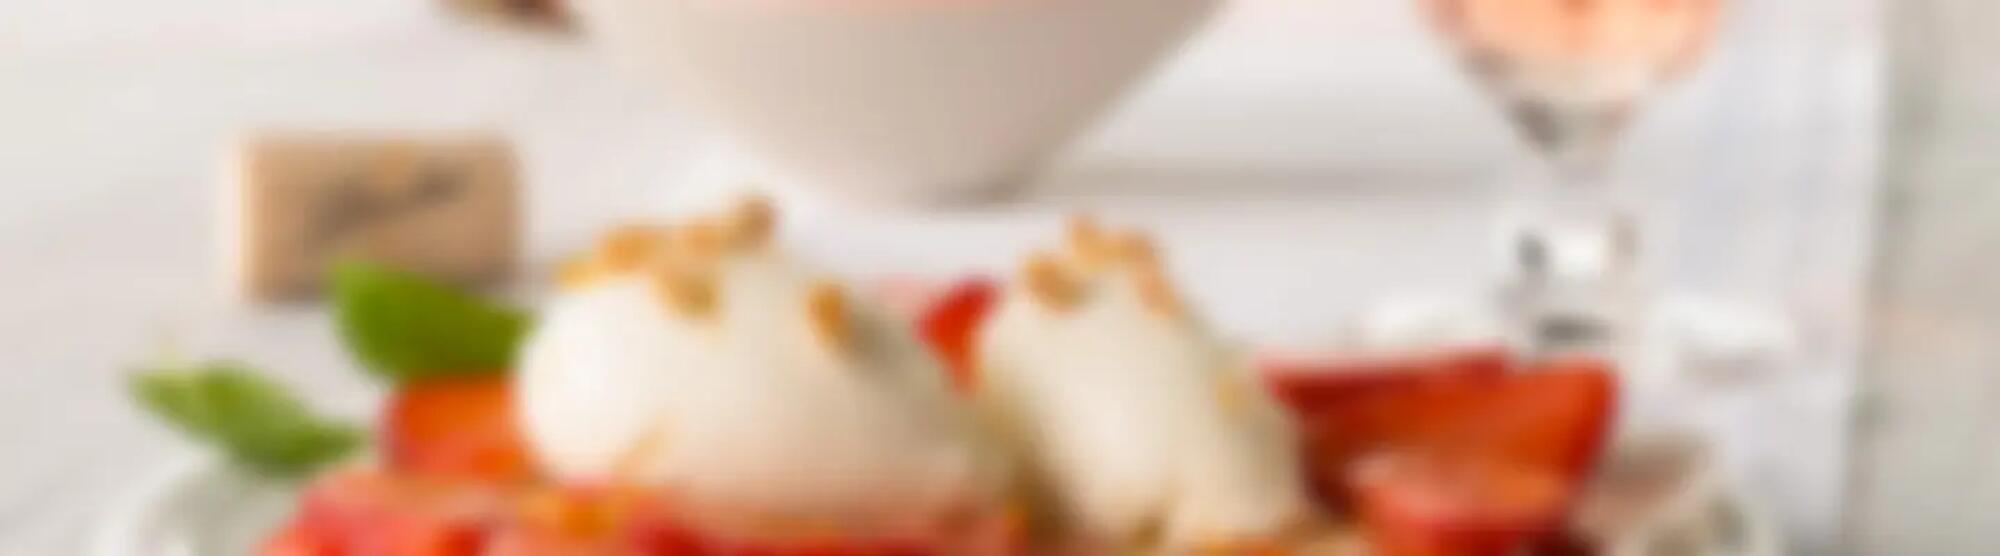 Recette : Carpaccio de fraises aux quenelles de fromage frais